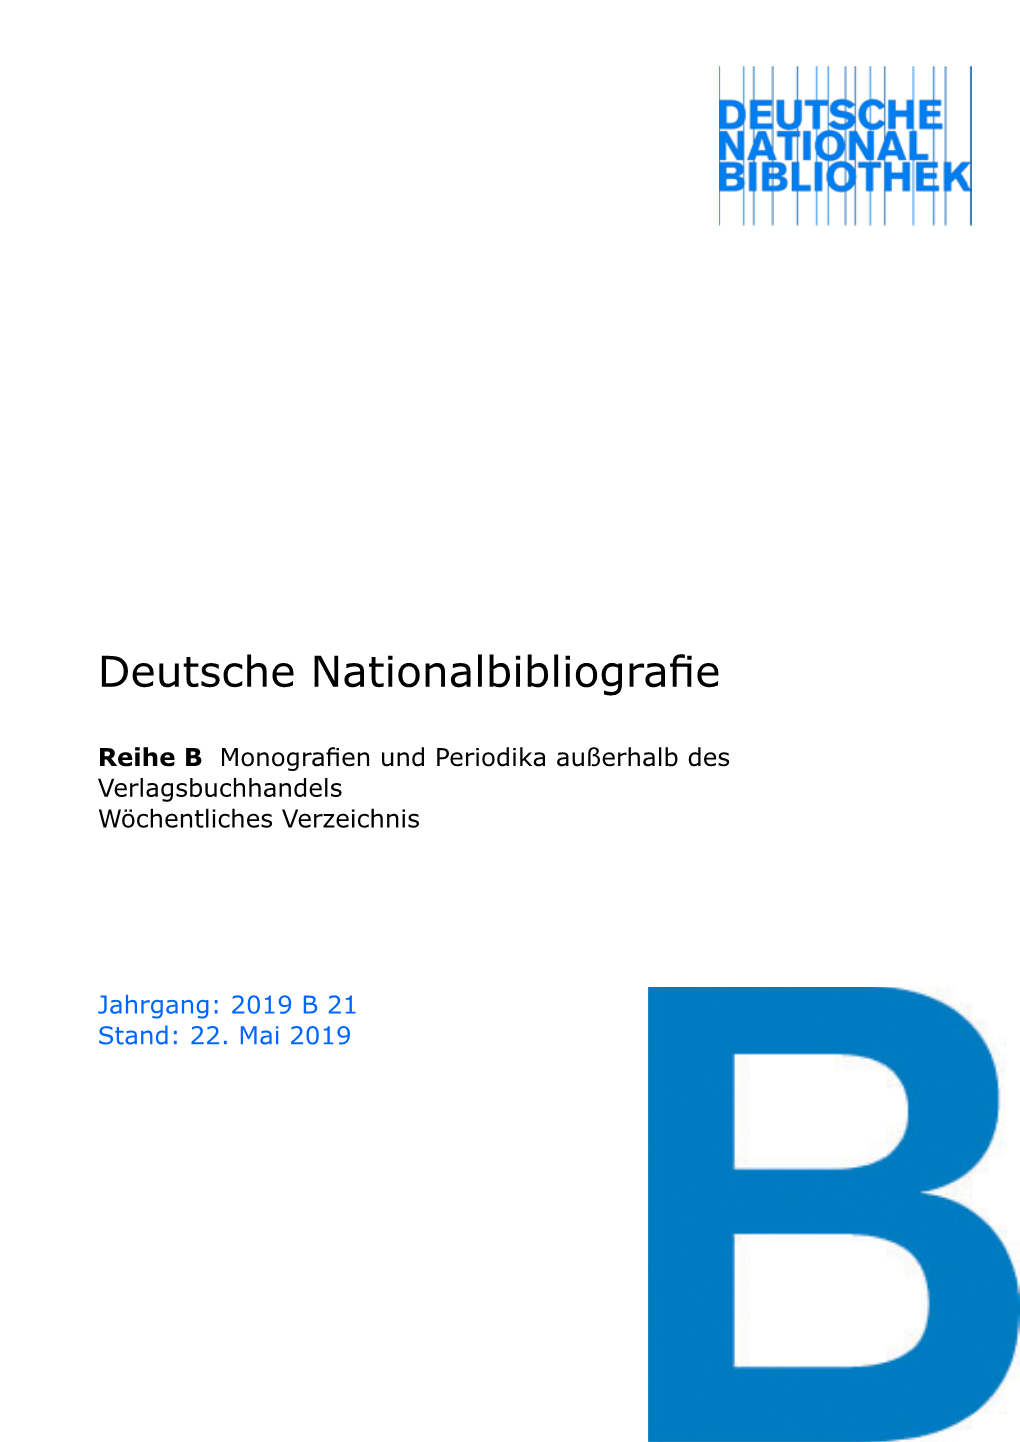 Deutsche Nationalbibliografie 2019 B 21